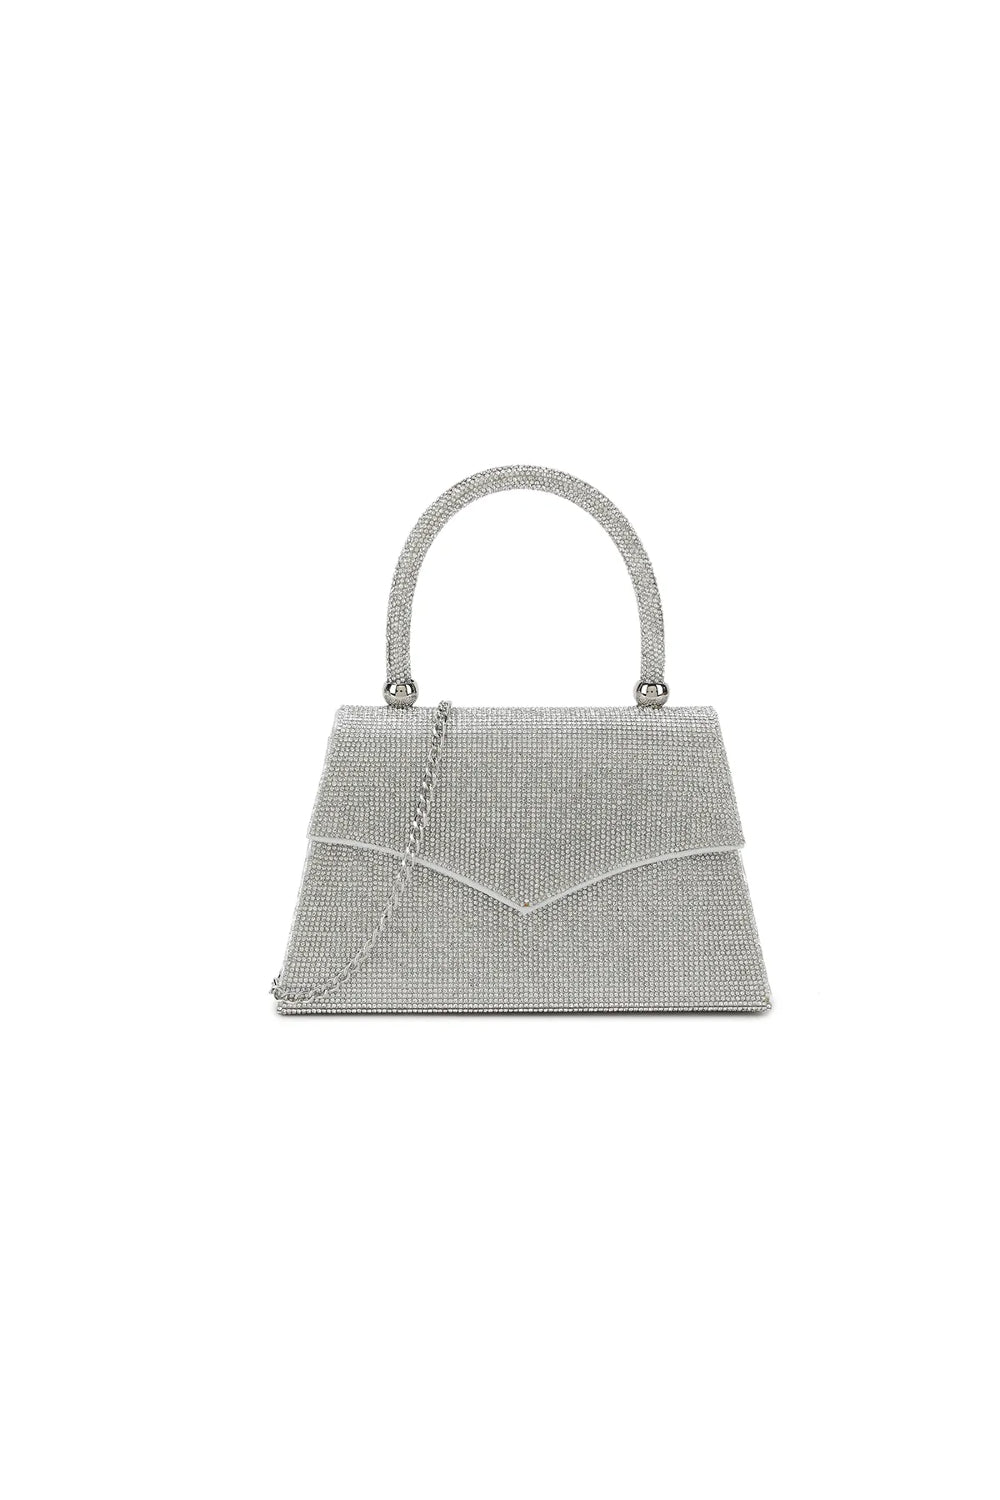 Silver Diamante Top Handle Bag ALH3015